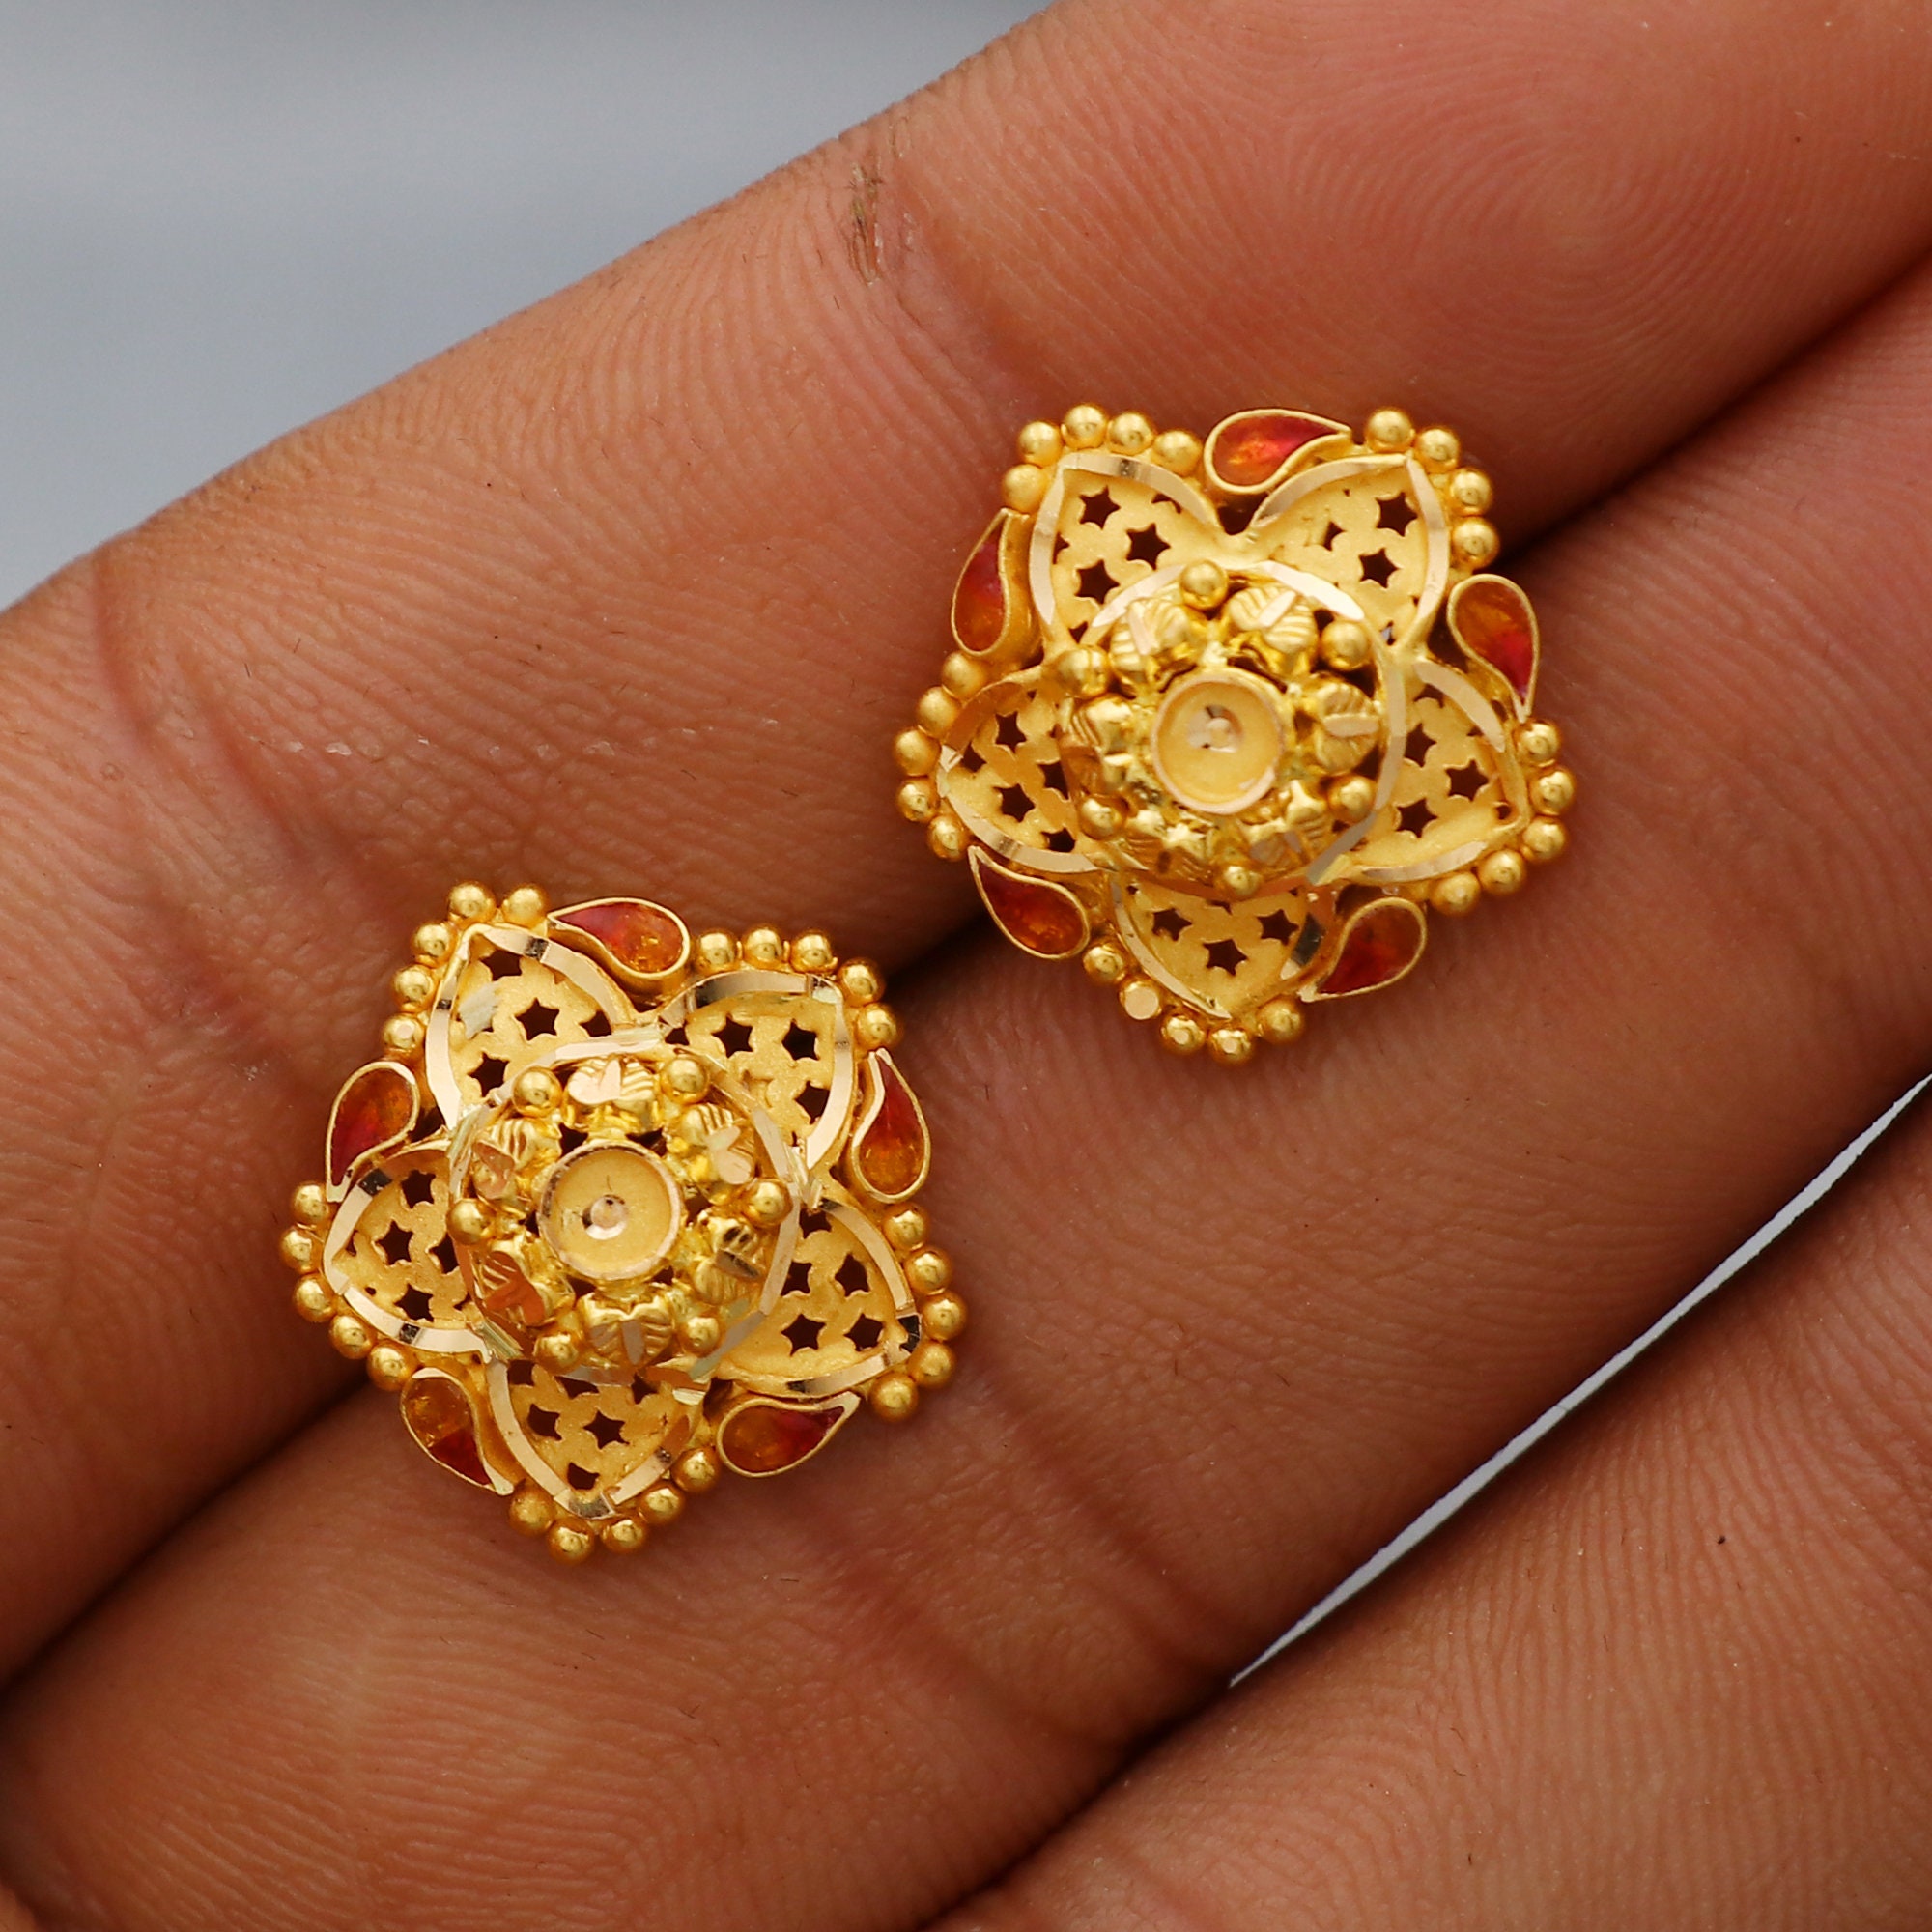 22K Gold Earrings For Women - 235-GER16358 in 2.600 Grams